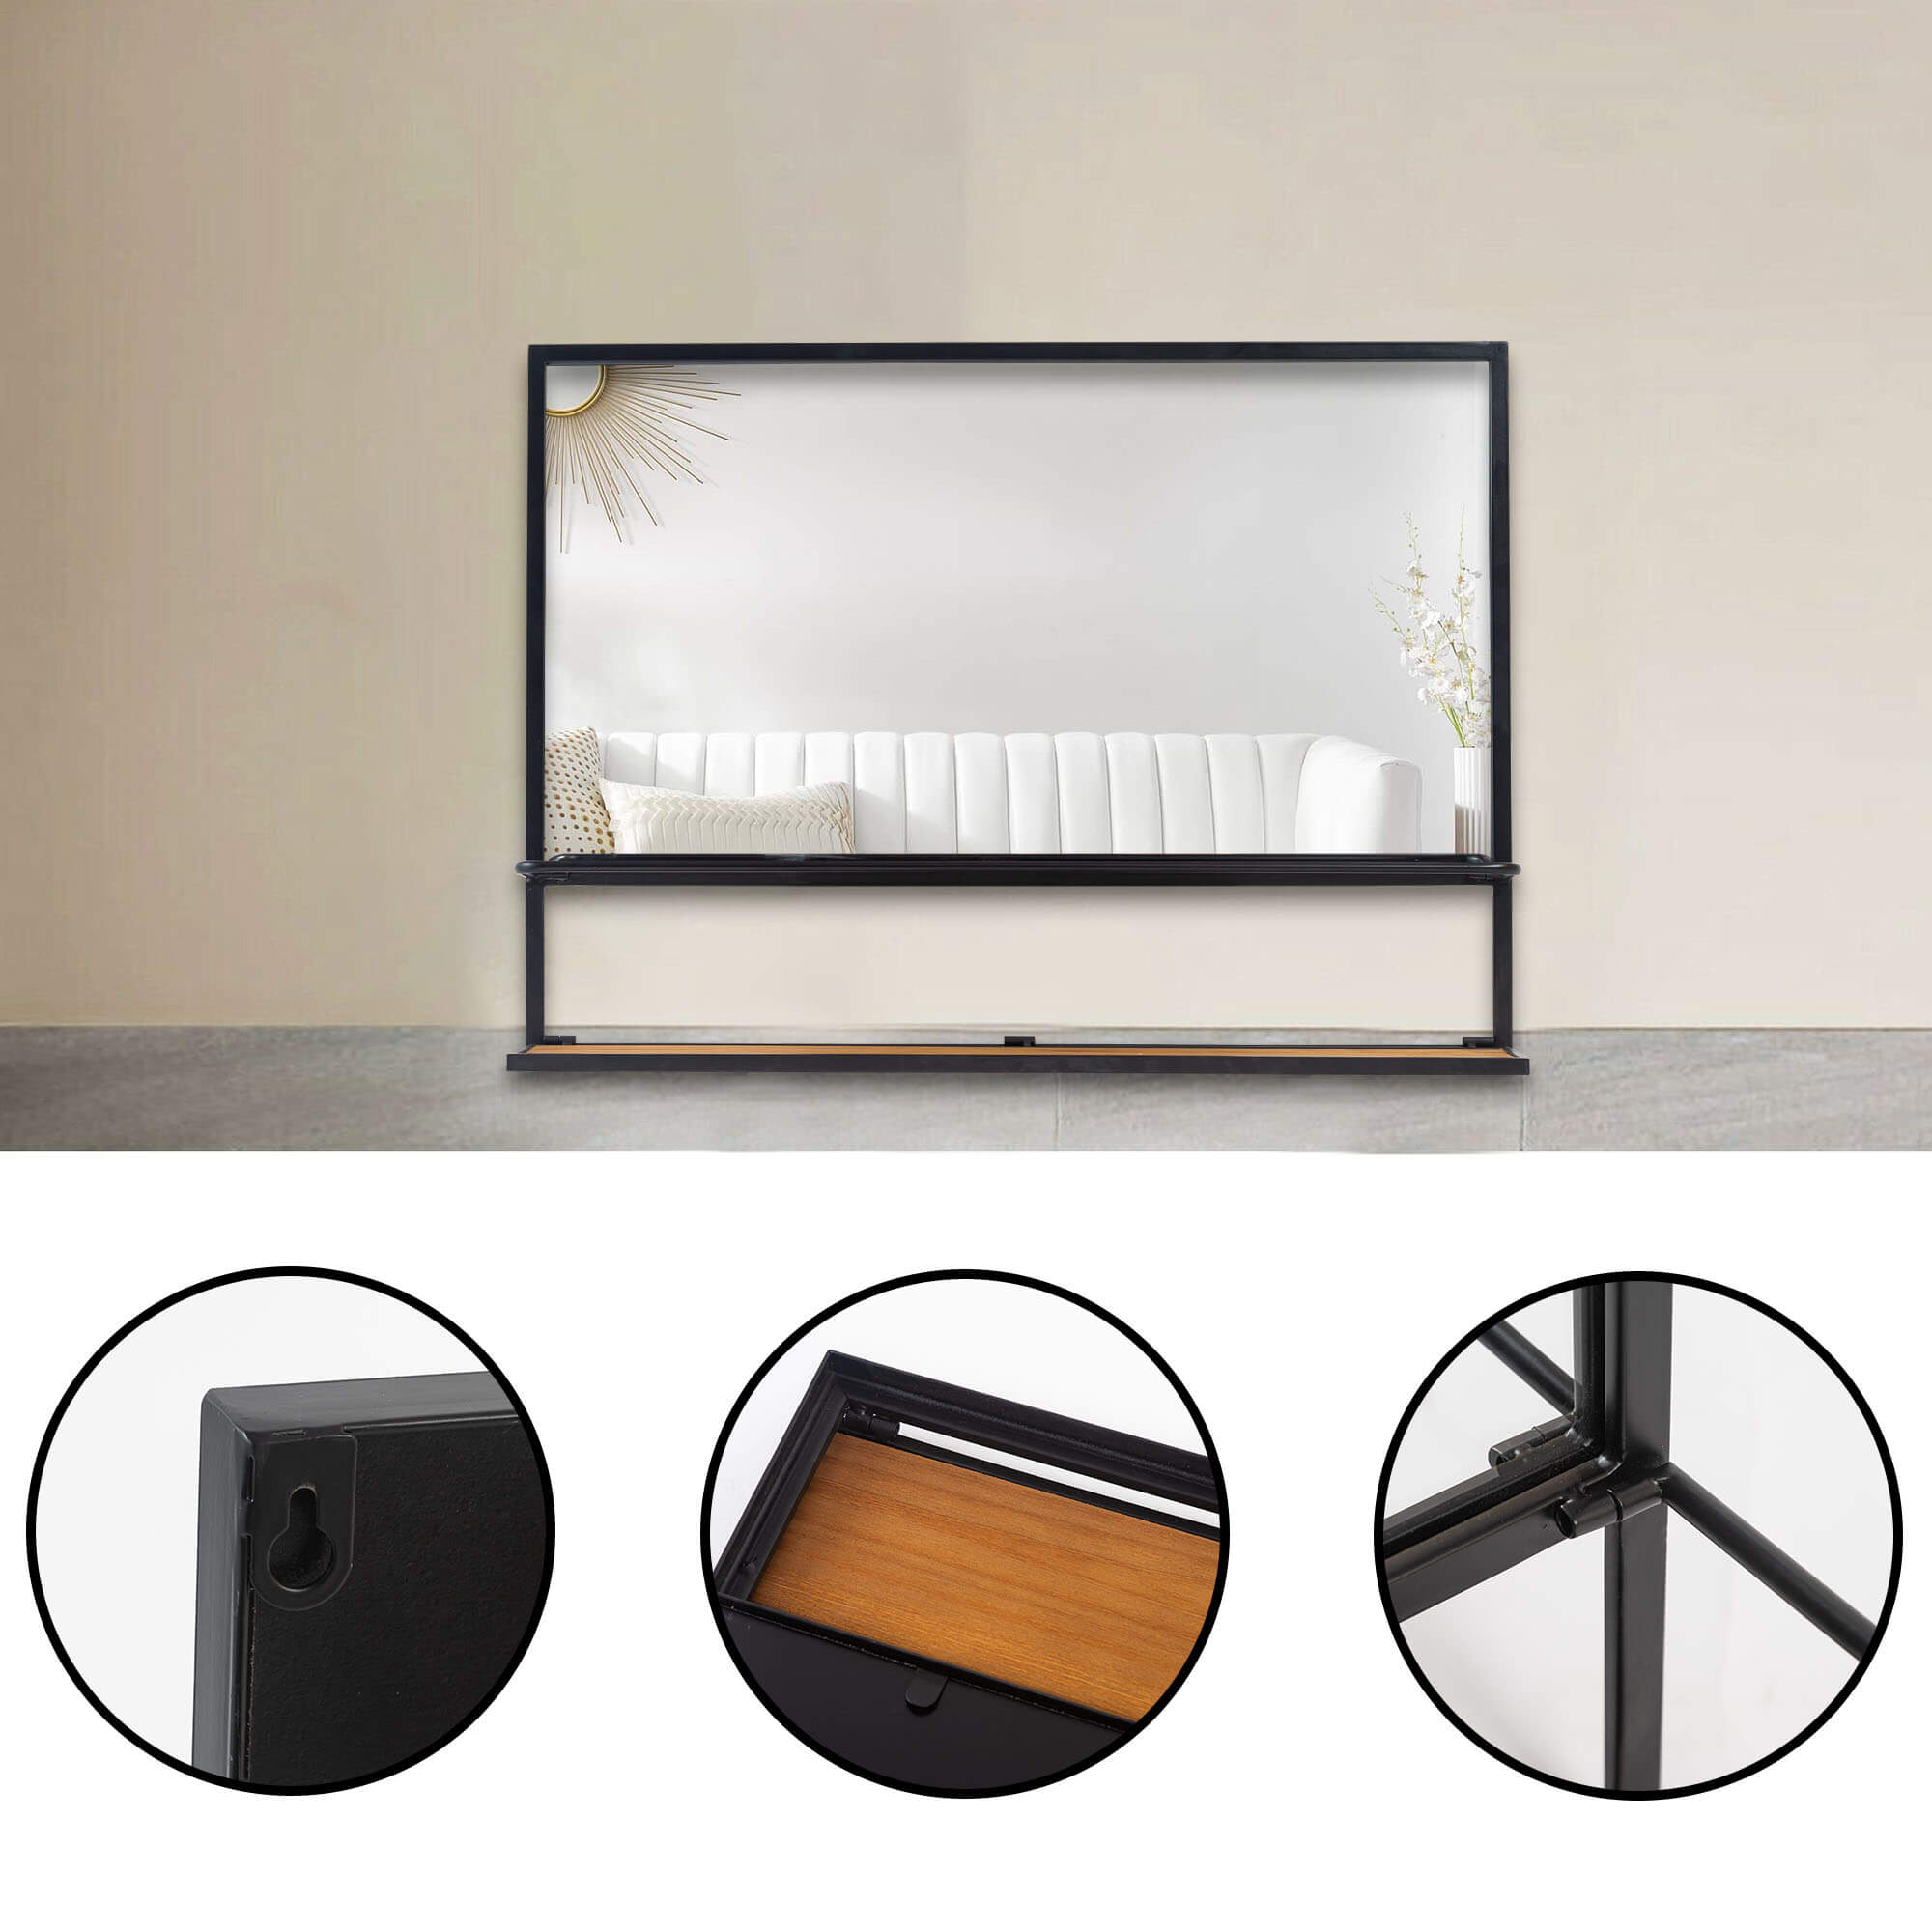 Poll-30"x22" Black Bathroom Mirror with Foldable Shelf